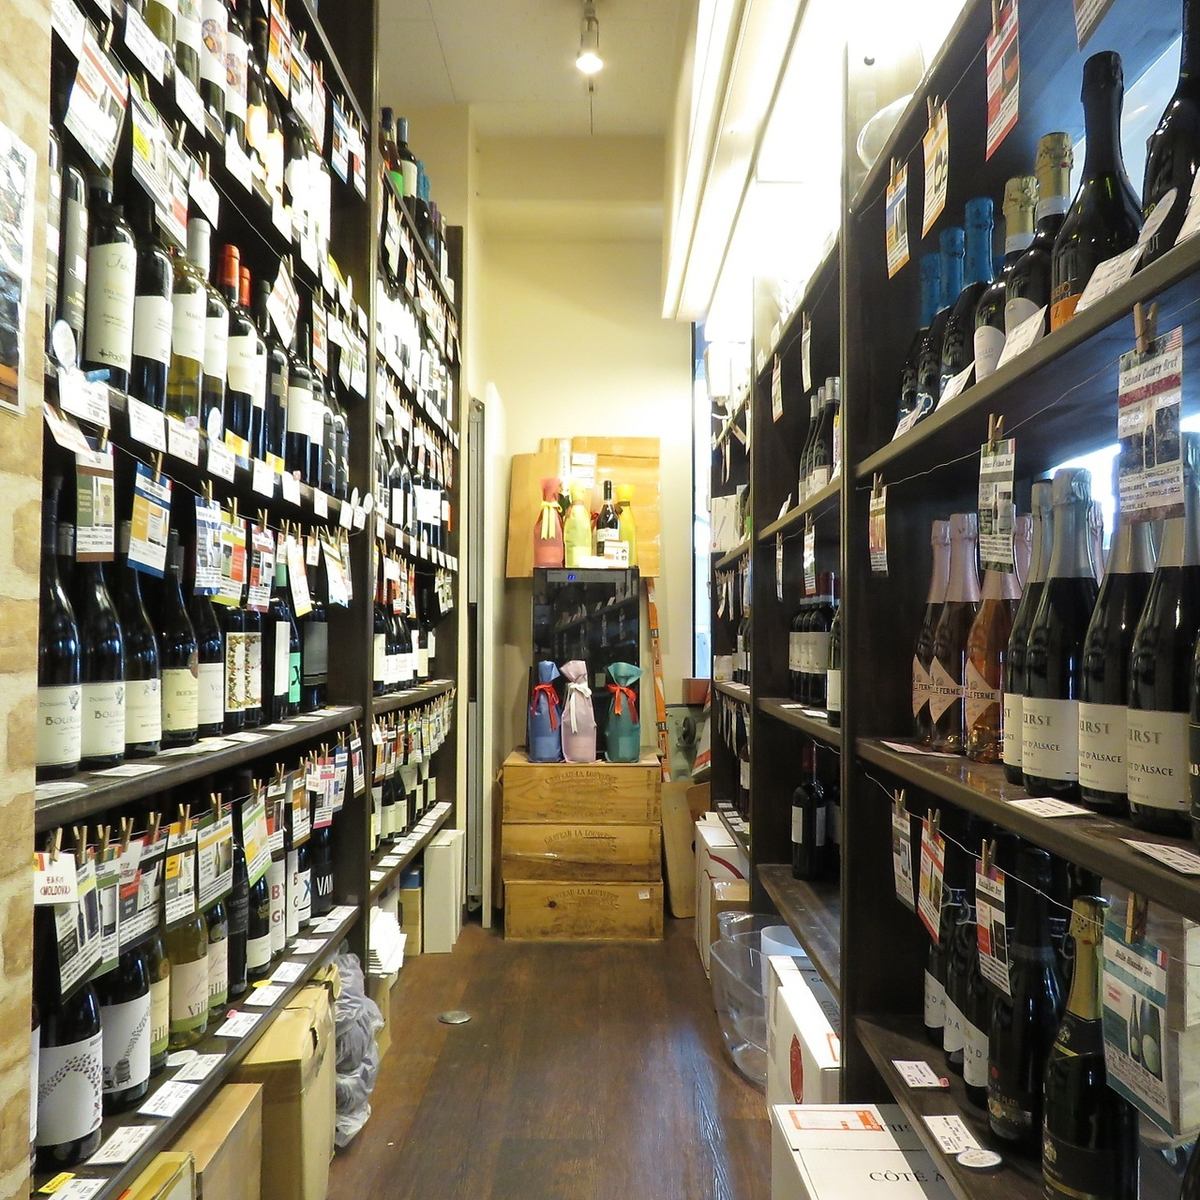 와인 숍이 병설되어있어 상시 2,000 개 이상의 와인 ♪